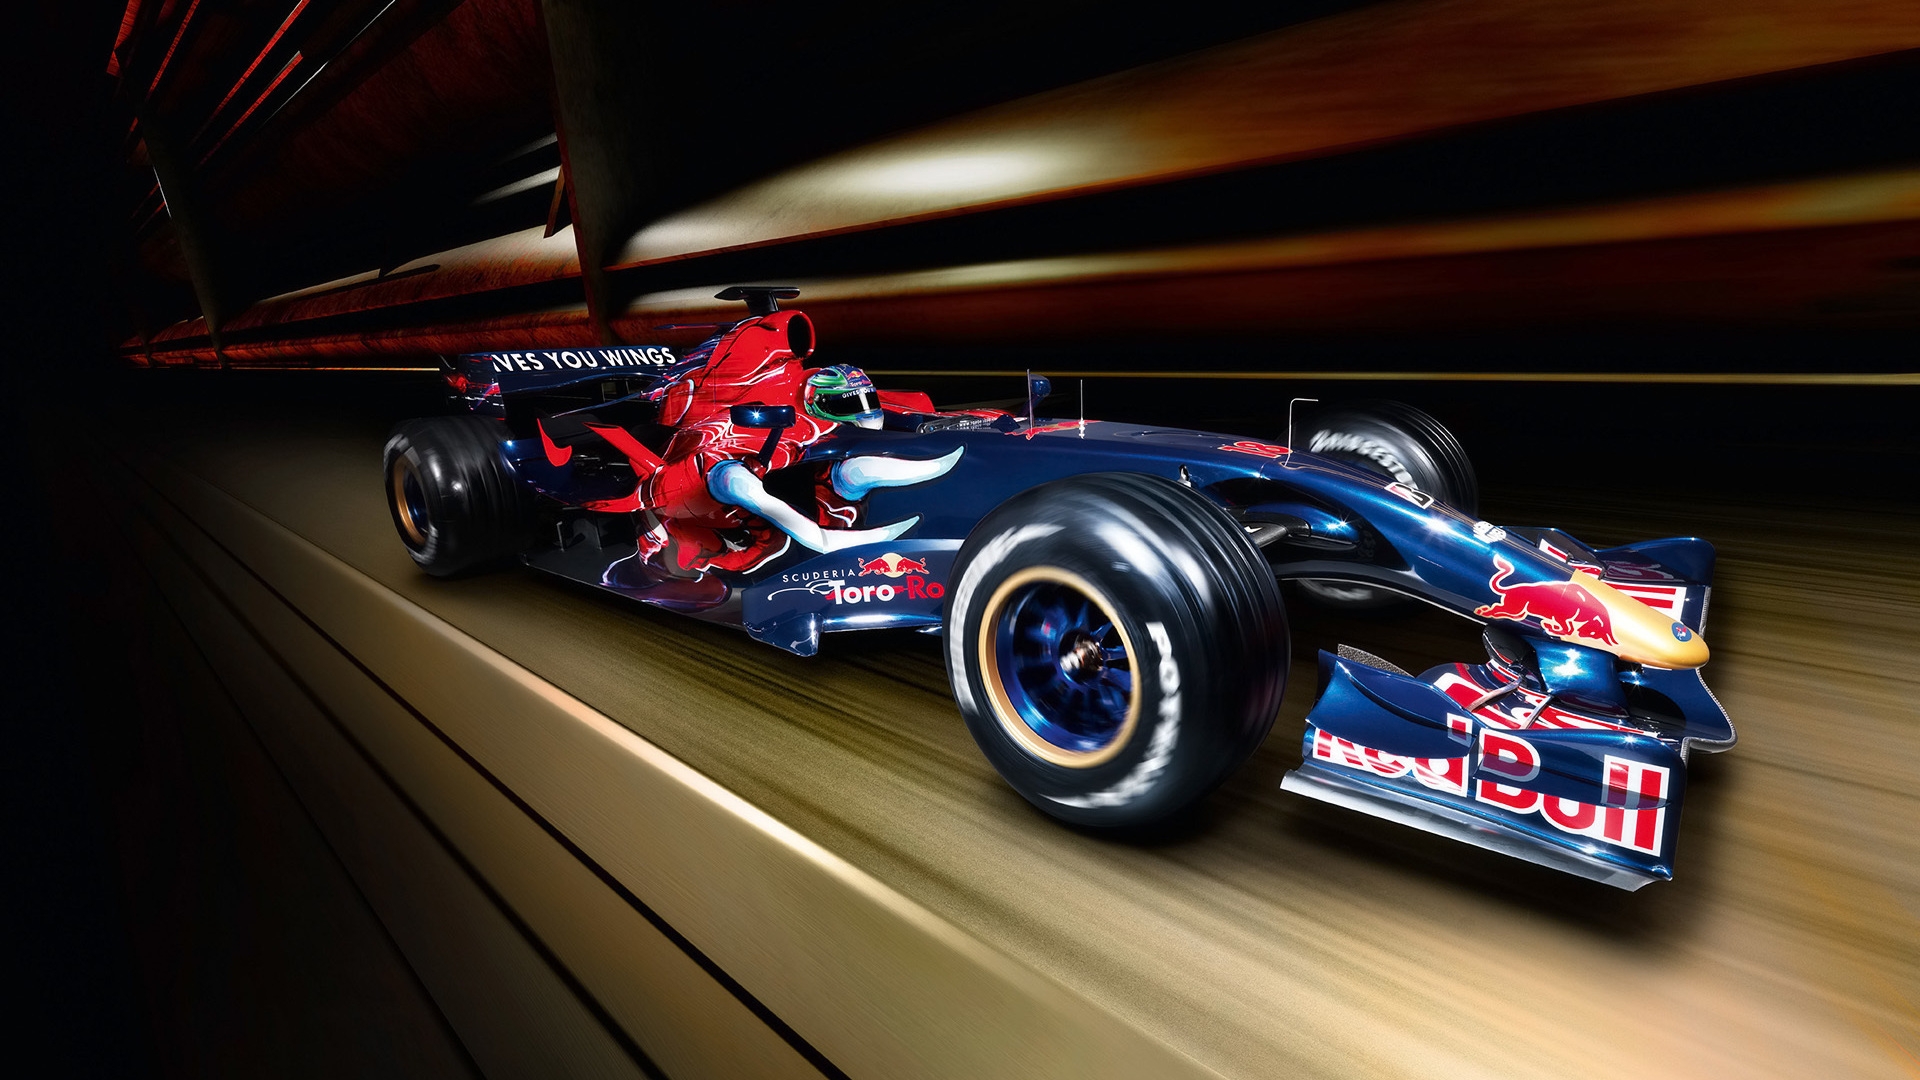 Formula 1 Red Bull 2007 for 1920 x 1080 HDTV 1080p resolution